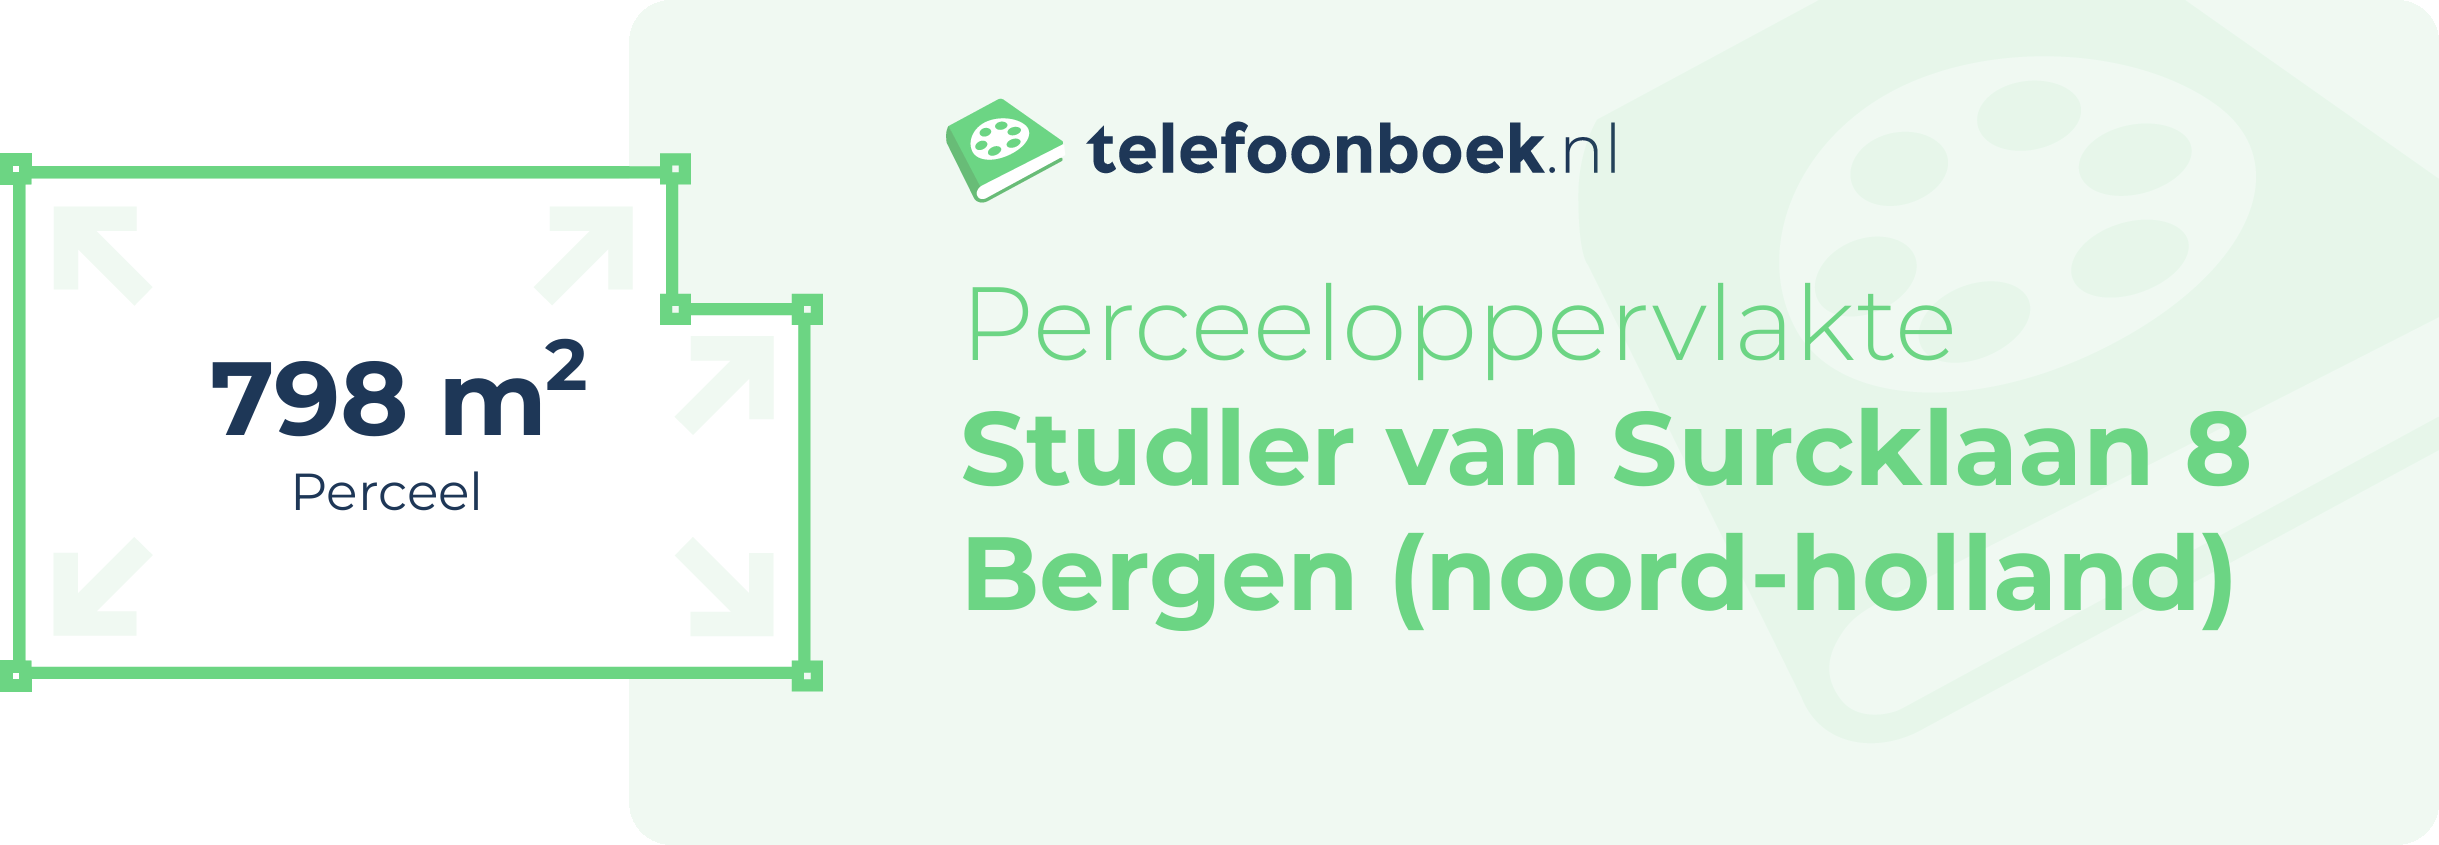 Perceeloppervlakte Studler Van Surcklaan 8 Bergen (Noord-Holland)